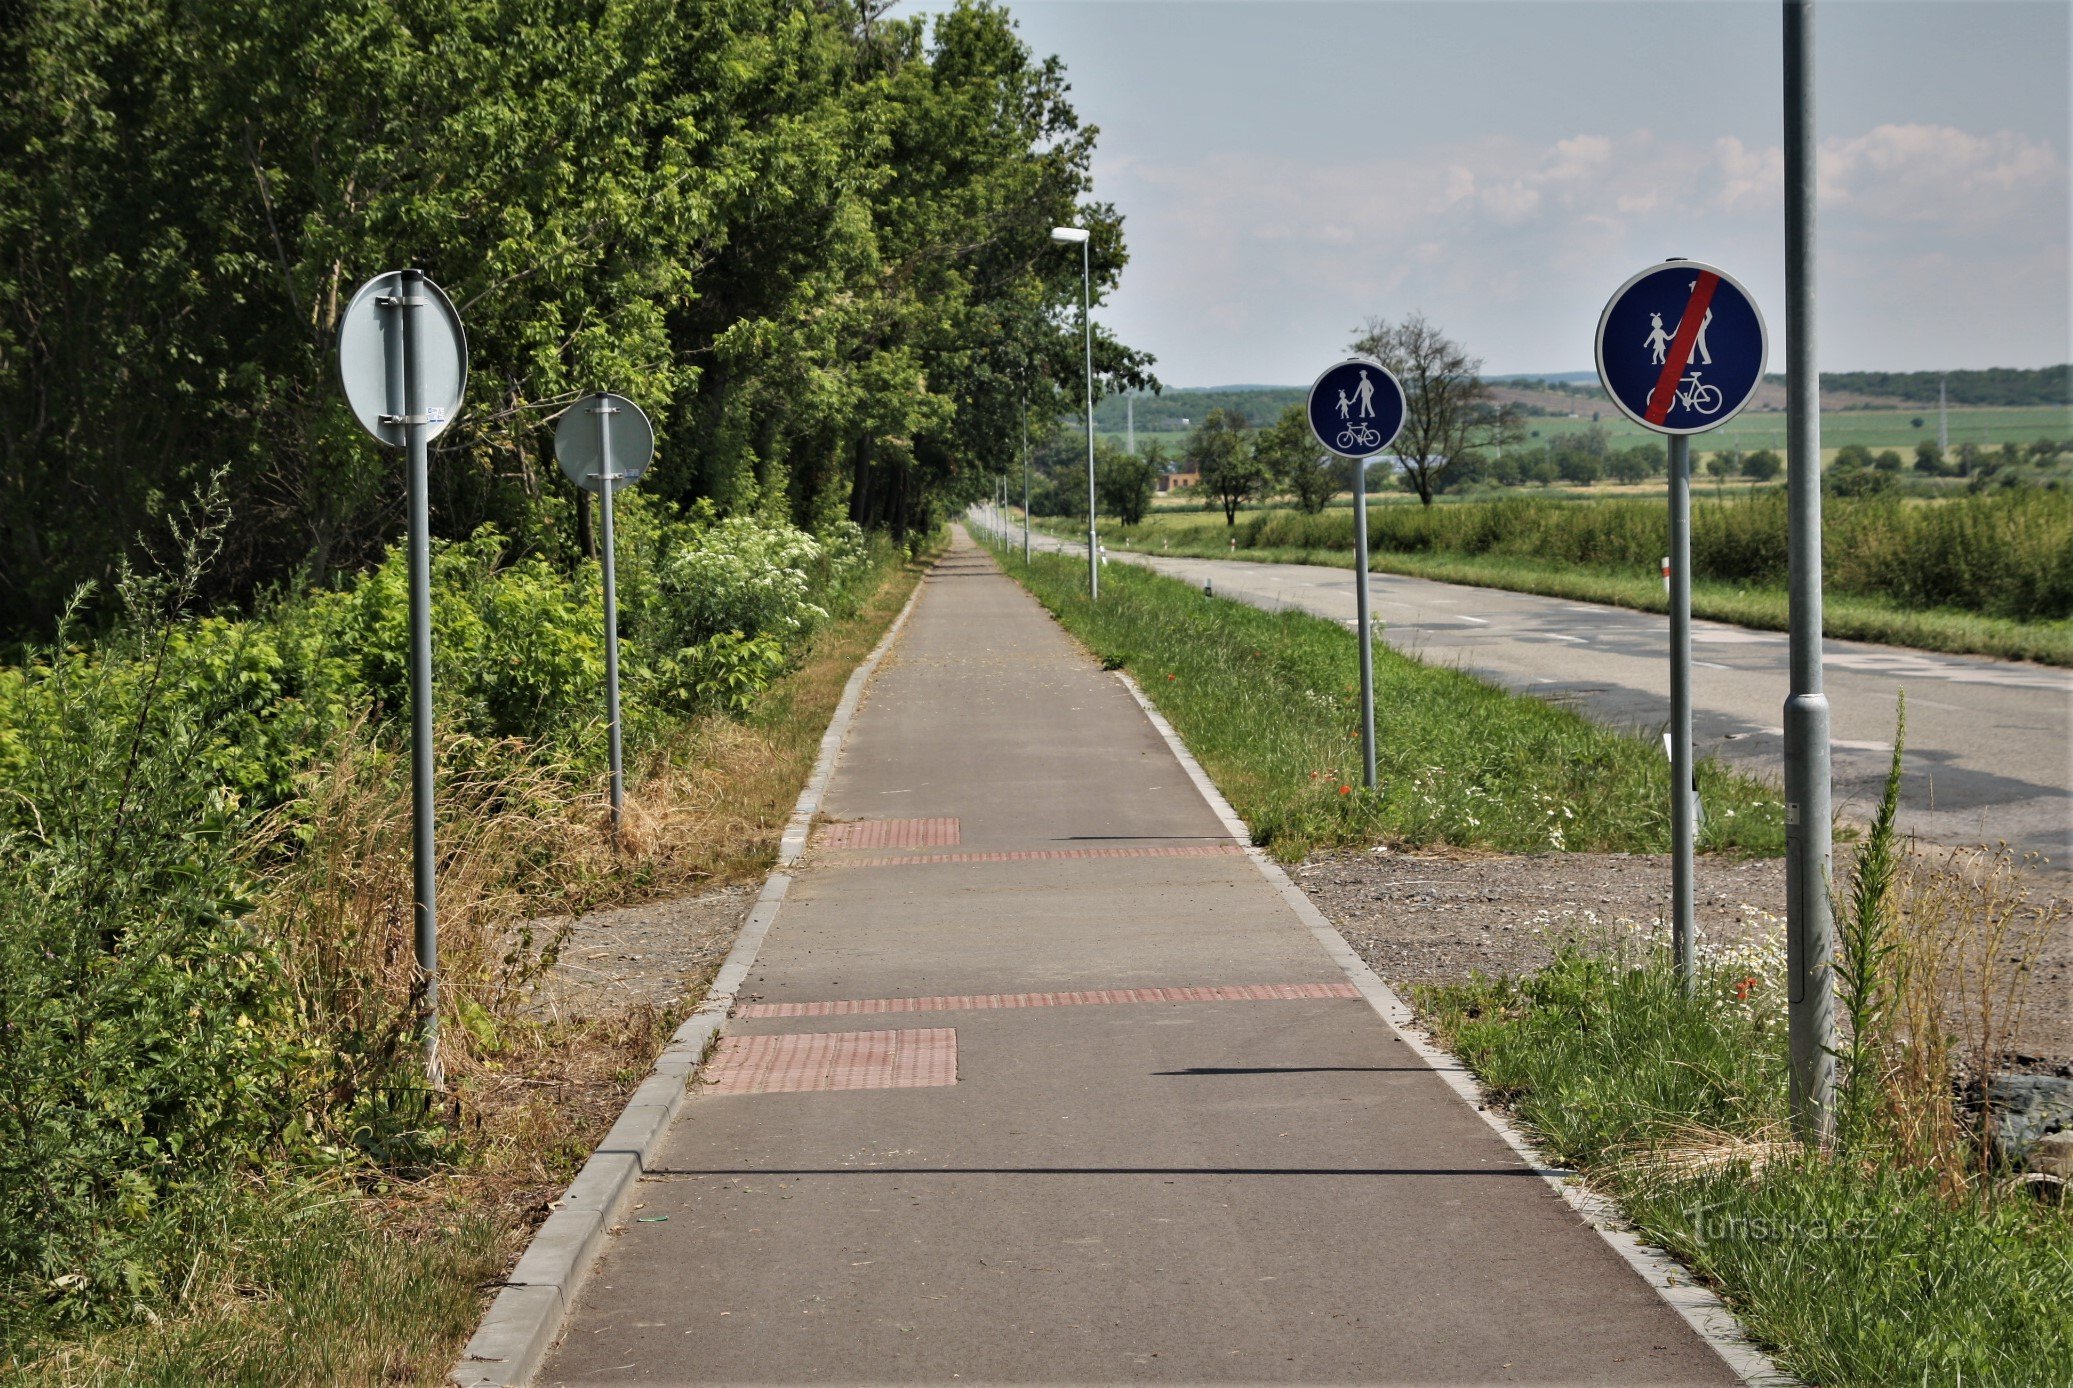 鉄道駅からザイェチの村までは、自転車道に沿って緑のマークが付いた観光道路が続いています。